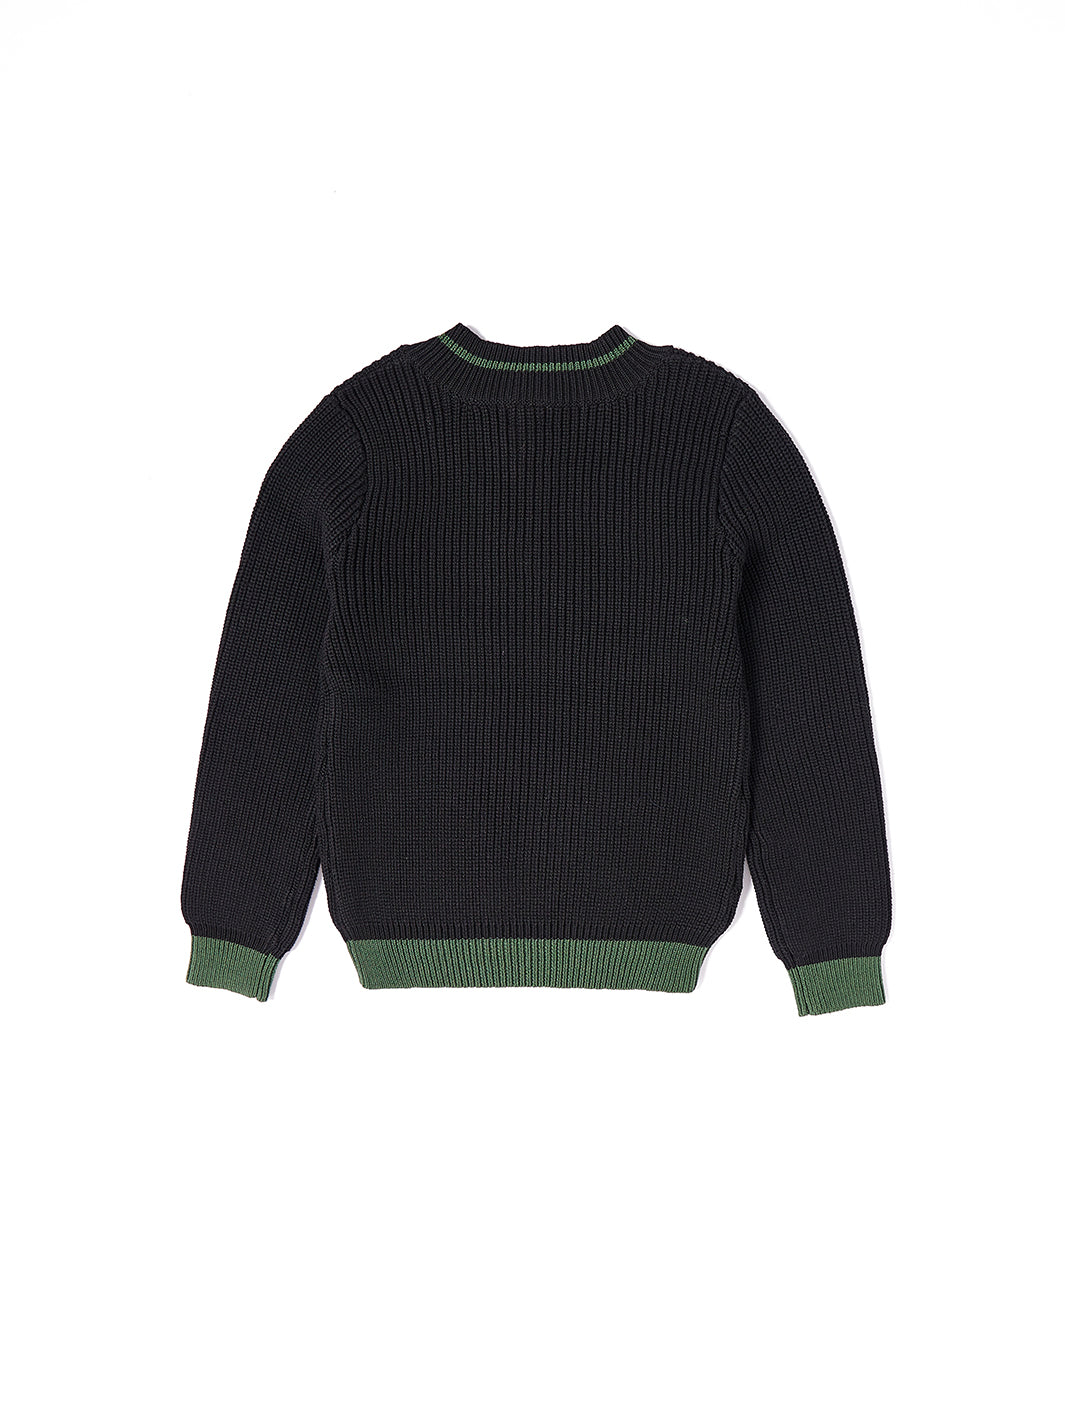 Emblem Sweater - Deep Green